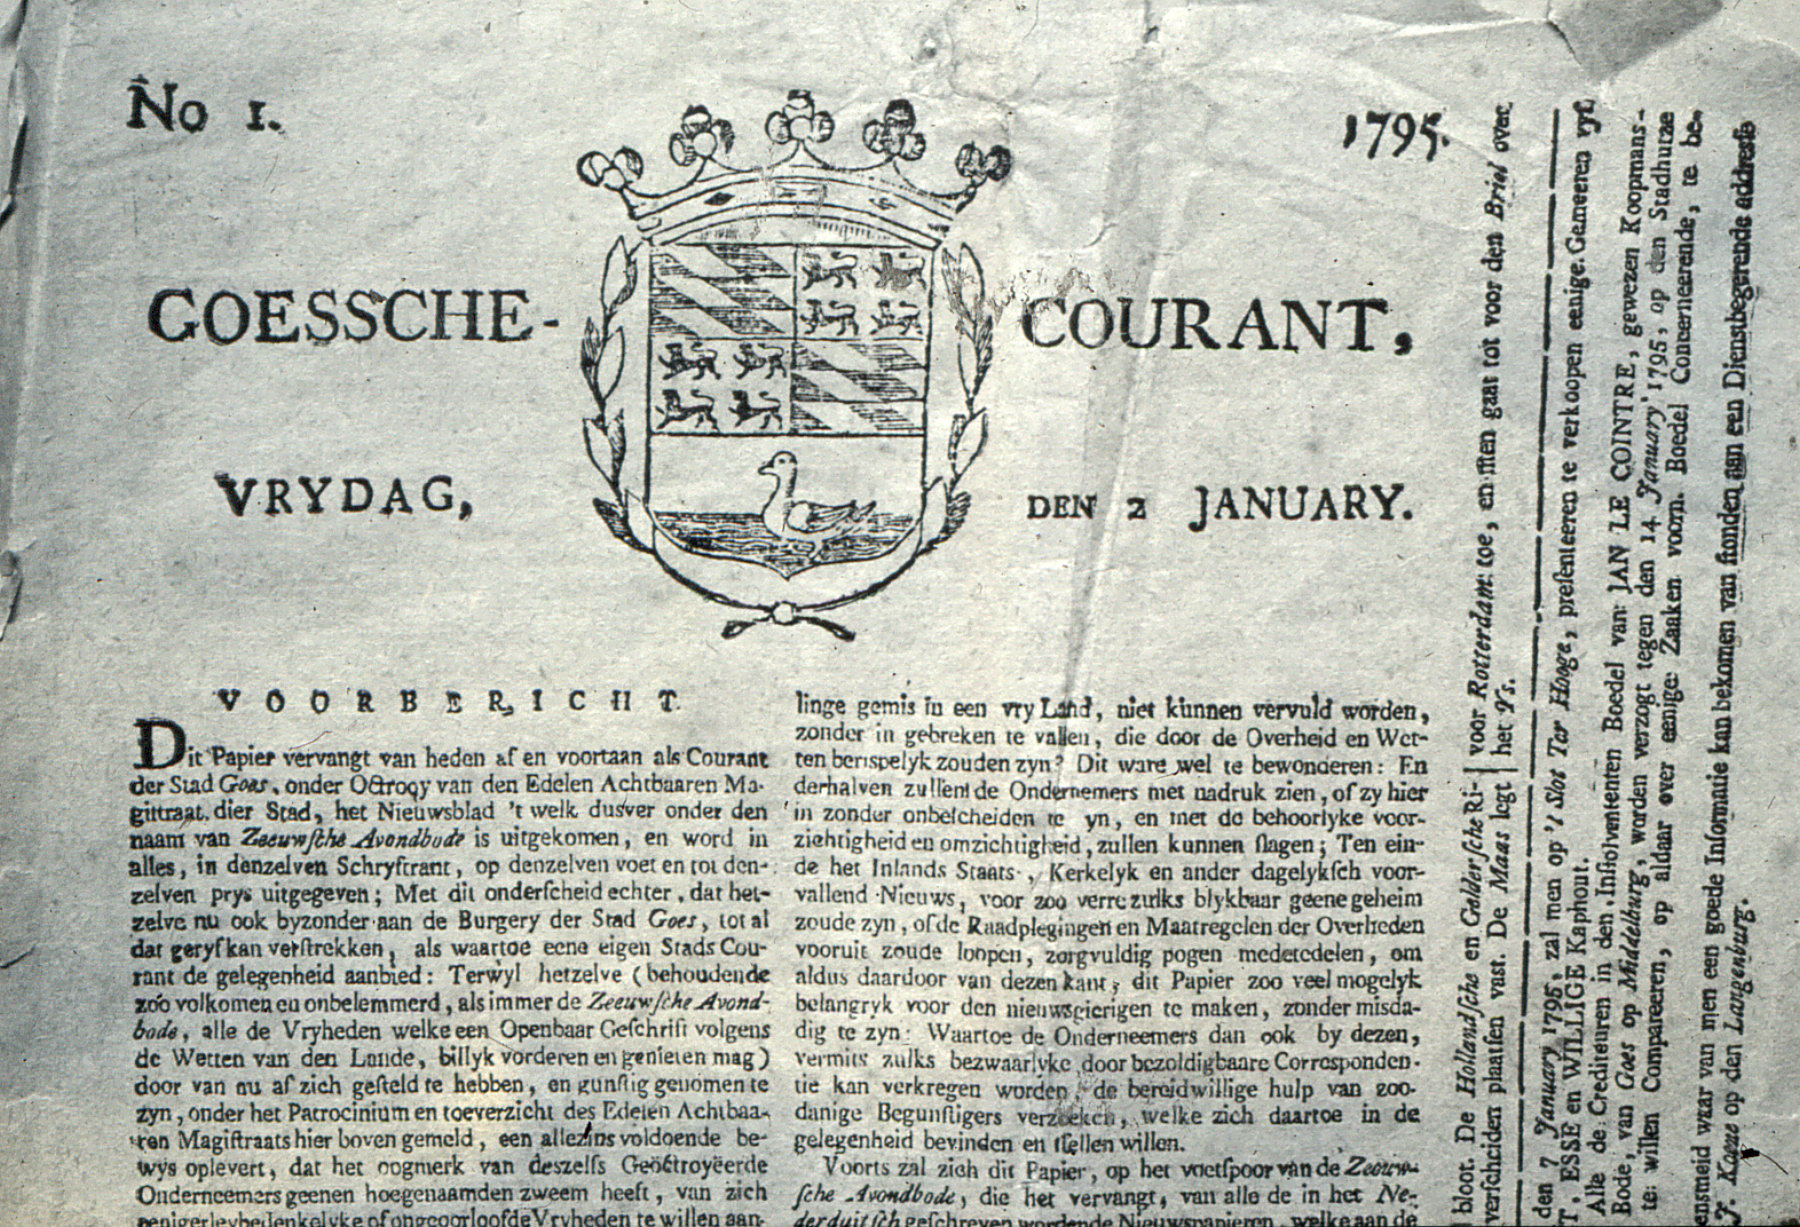 De eerste Goessche Courant, verschenen 2 januari 1795.